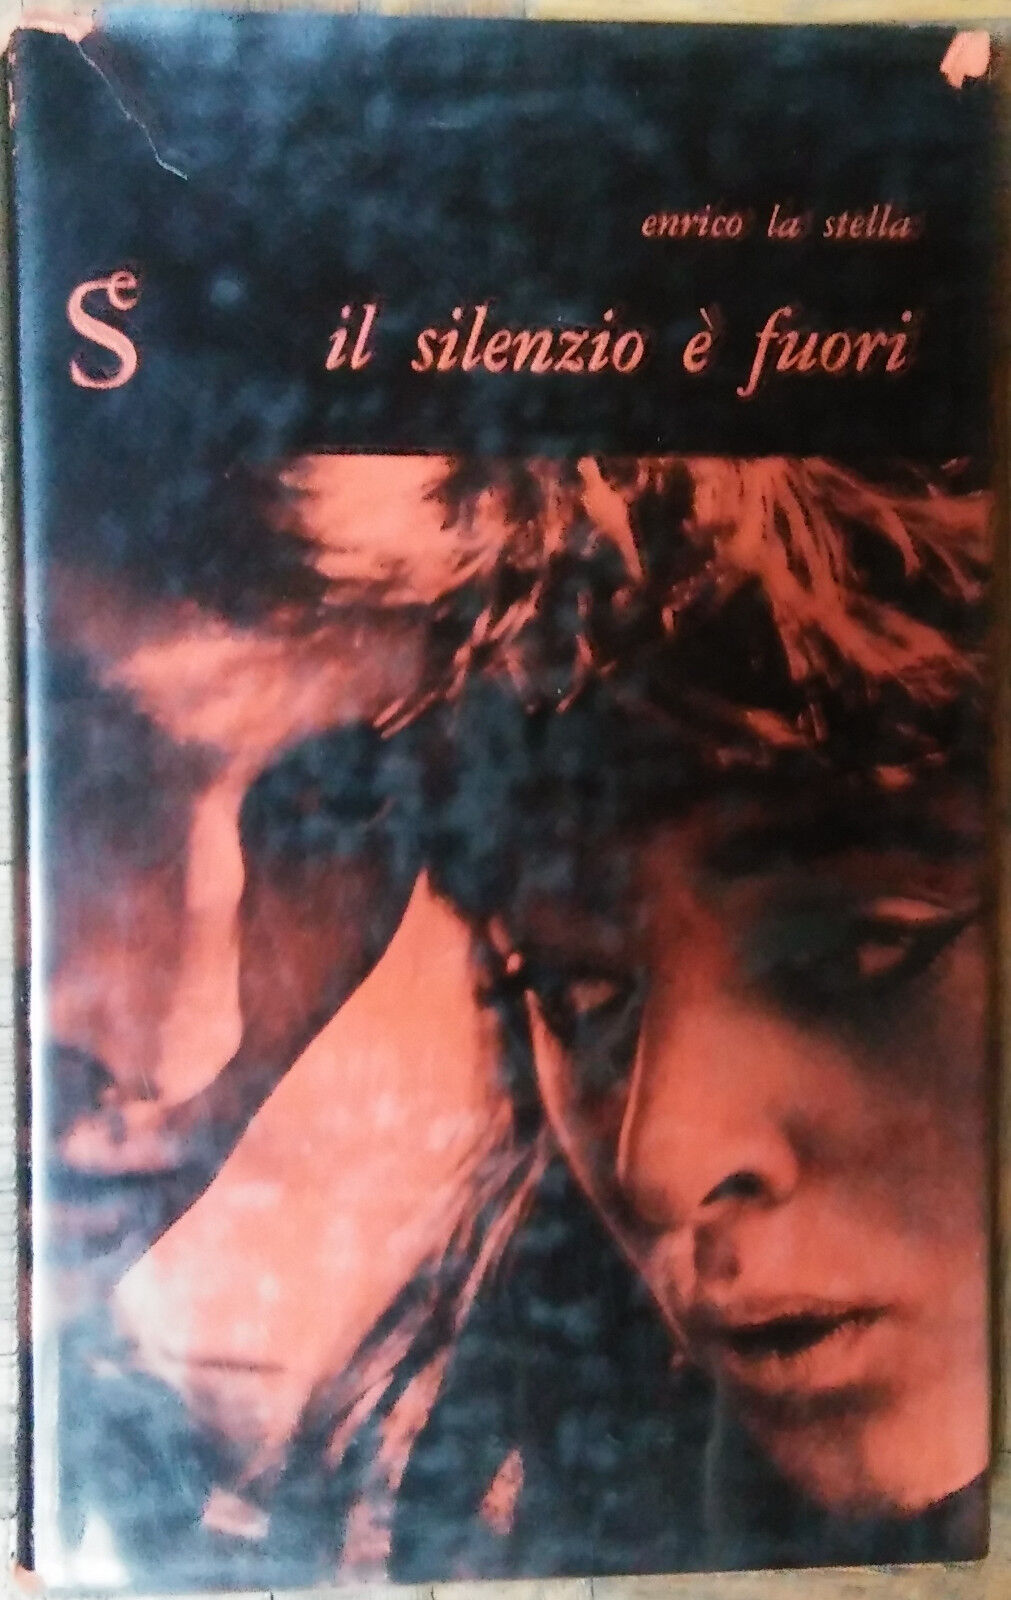 Il silenzio ? fuori - Enrico La Stella - Sugar Editore,1958 - R